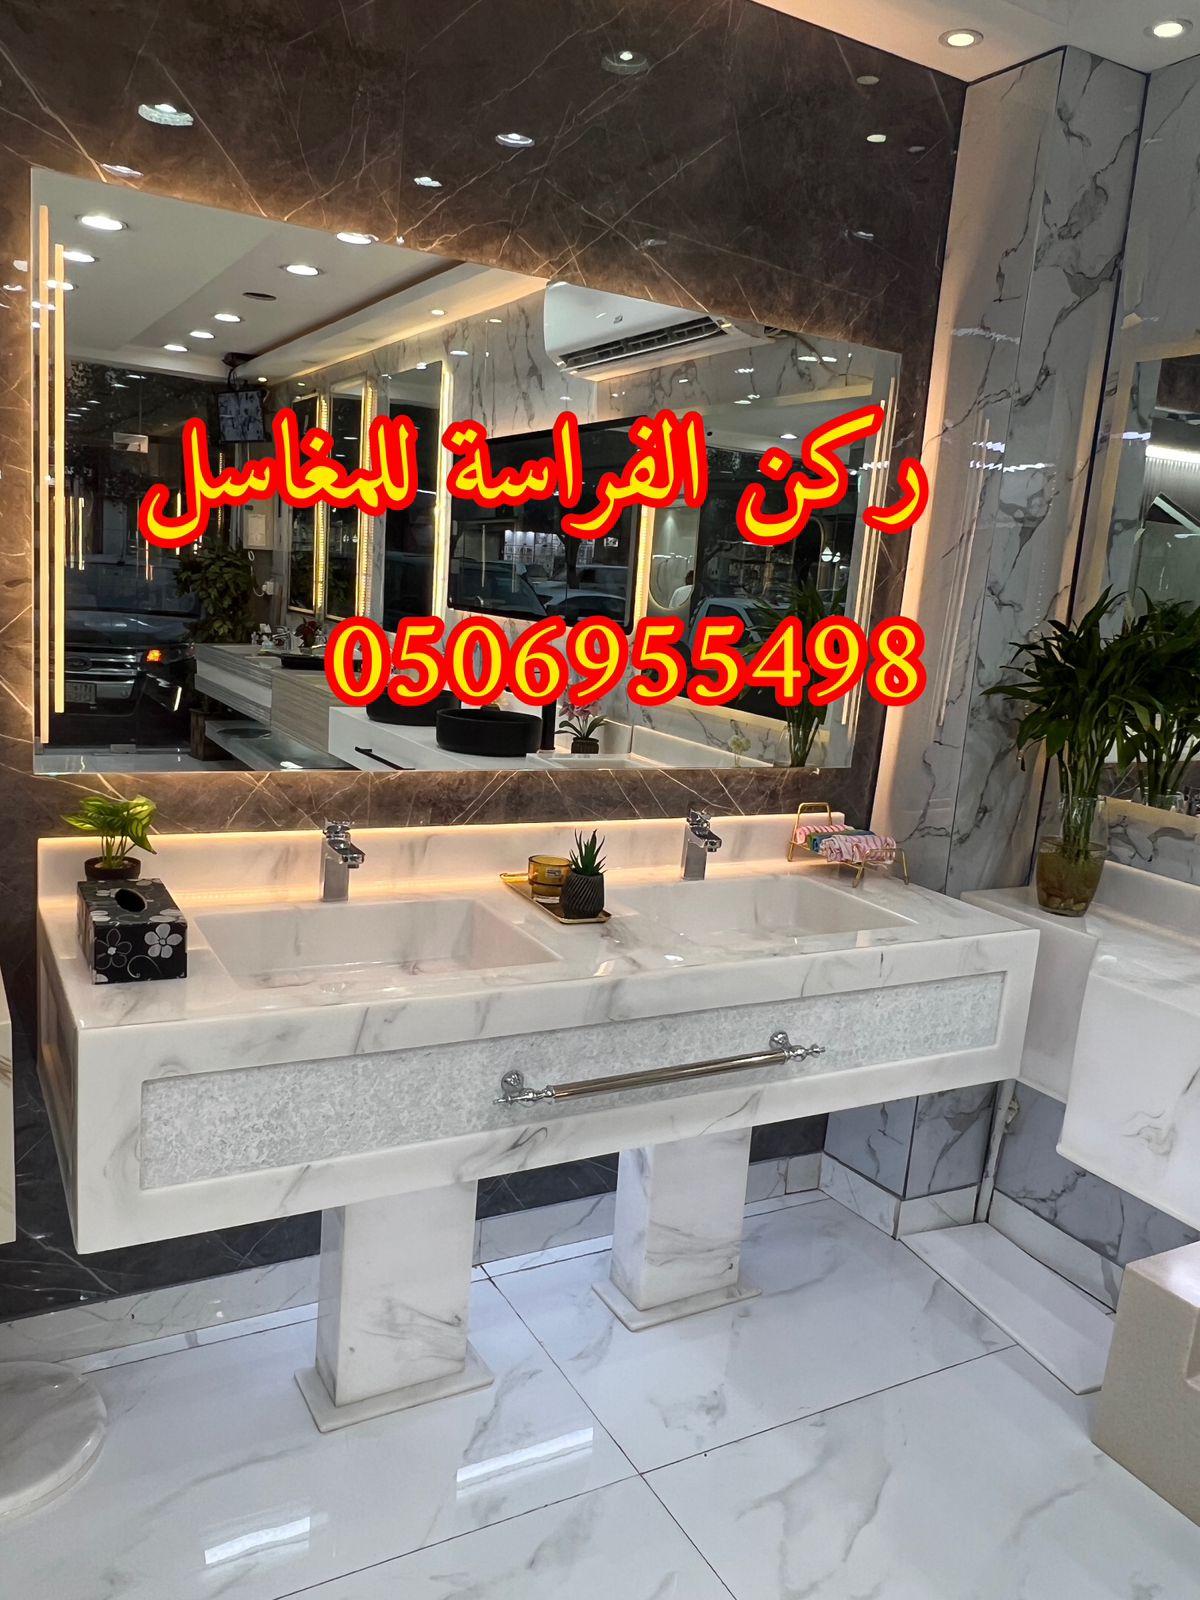 احواض مغاسل رخام في الرياض,0506955498 554703042